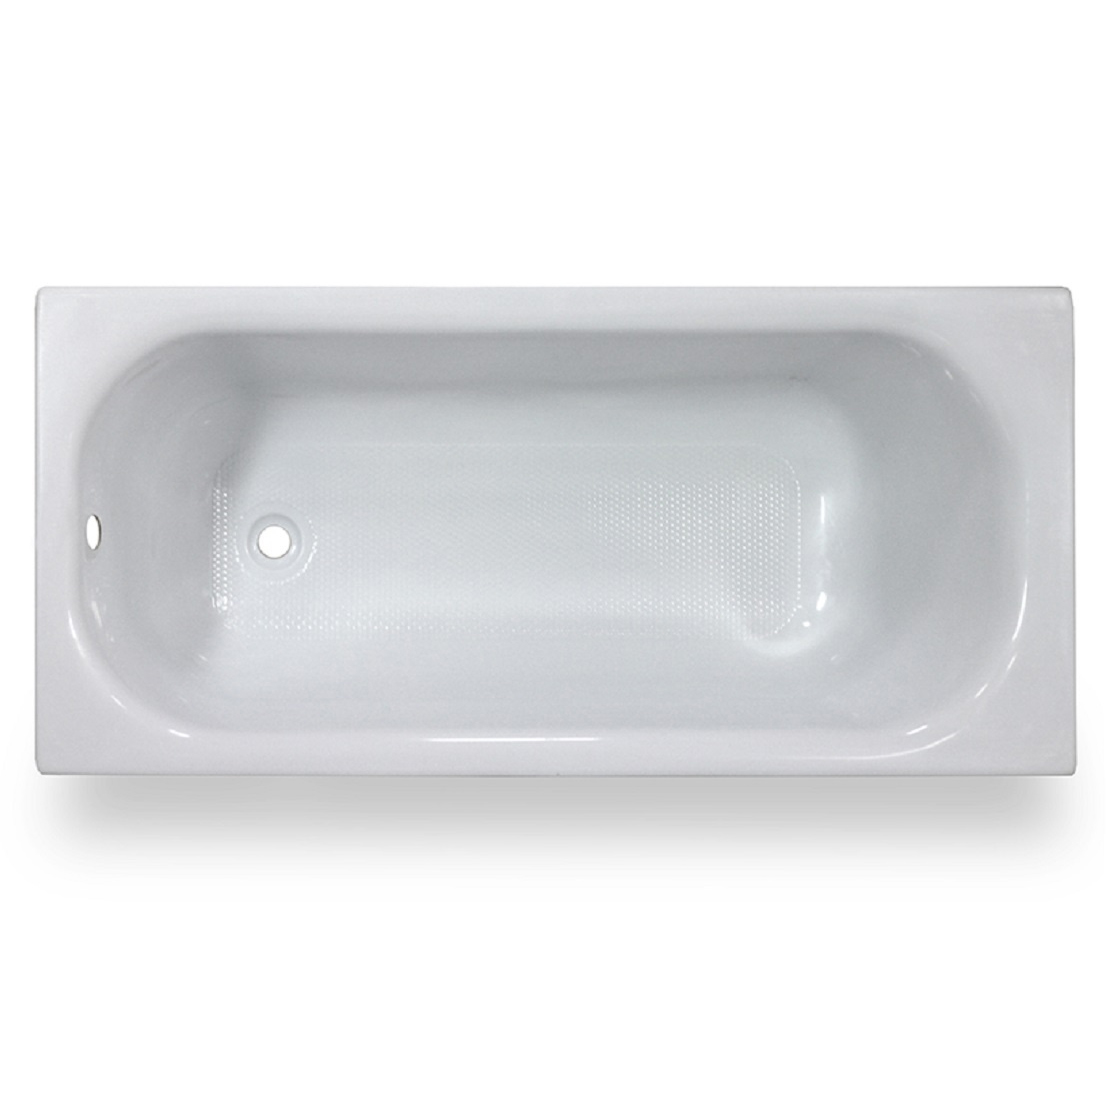 Акриловая ванна Тритон Ультра 120, цвет белый Щ0000017400 - фото 1